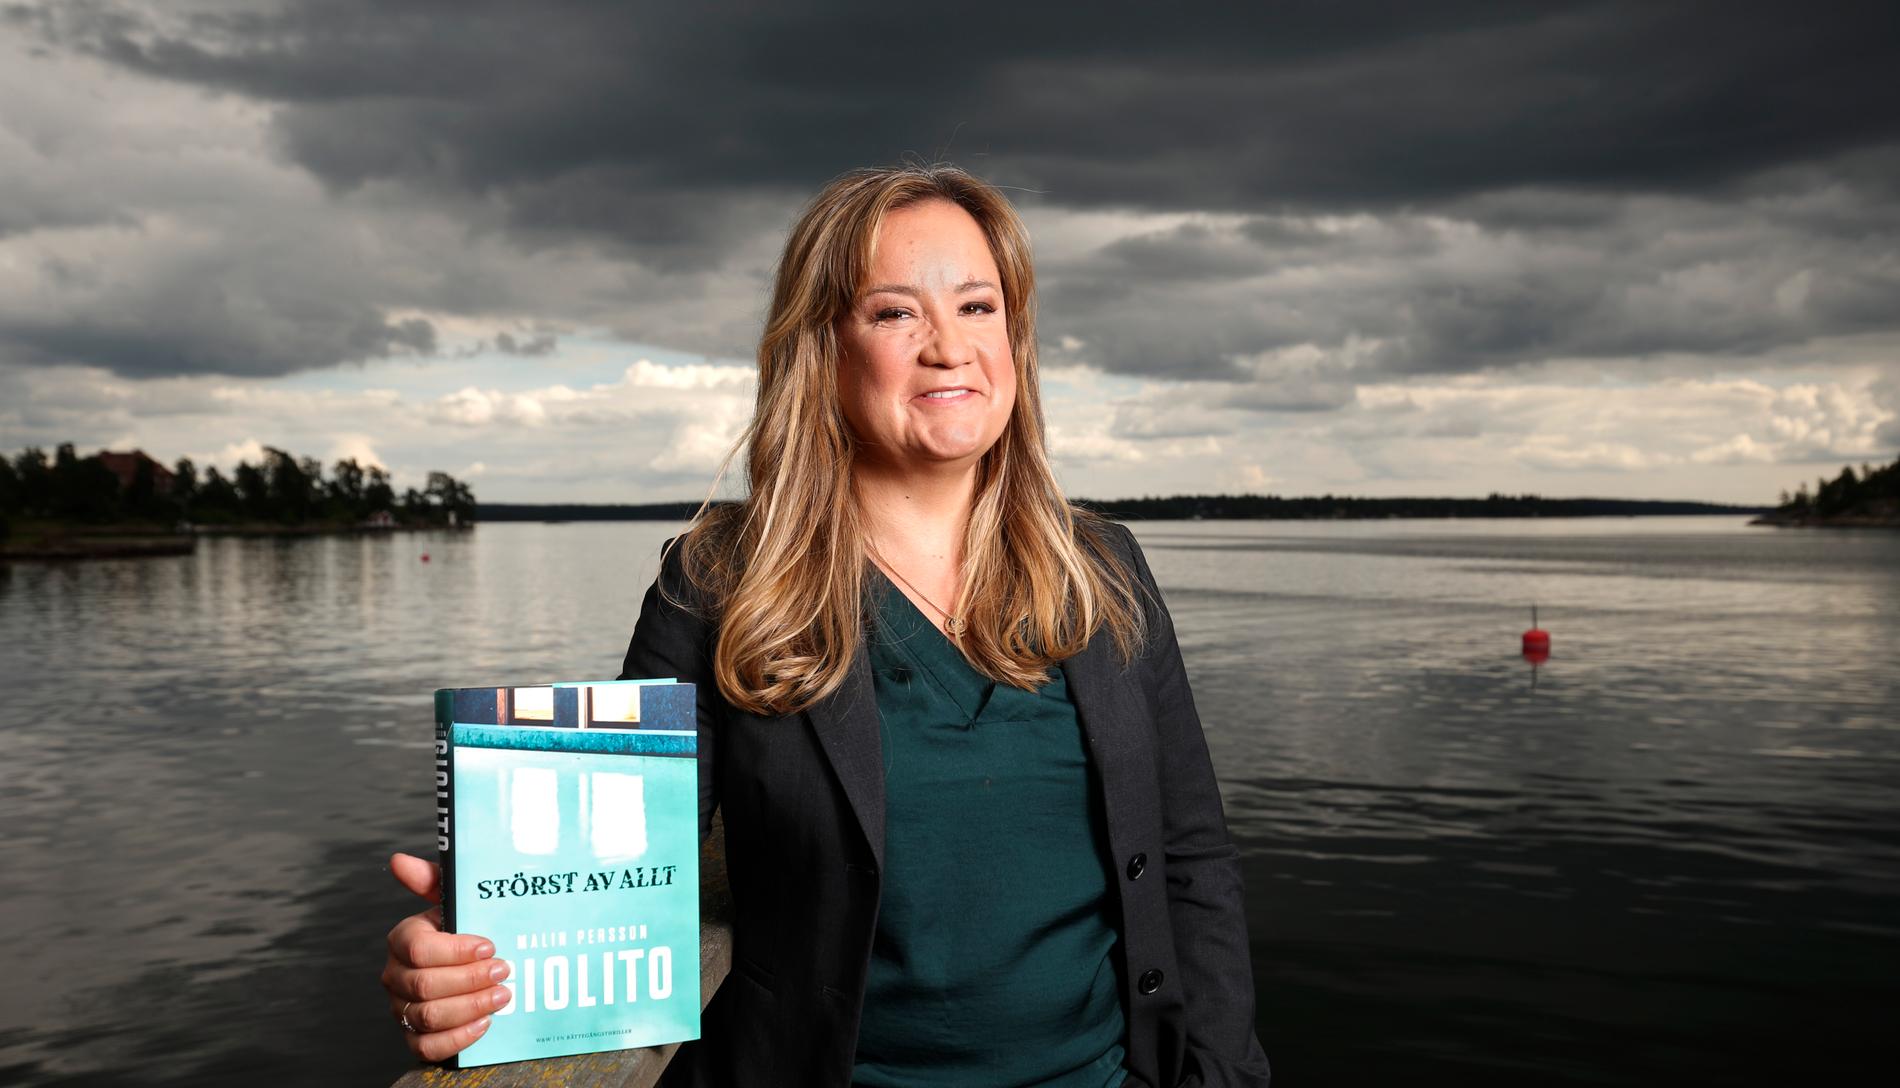 Malin Persson Giolitos roman "Störst av allt", som började sändas som tv-serie på Netflix den 5 april, kan få en andra säsong.